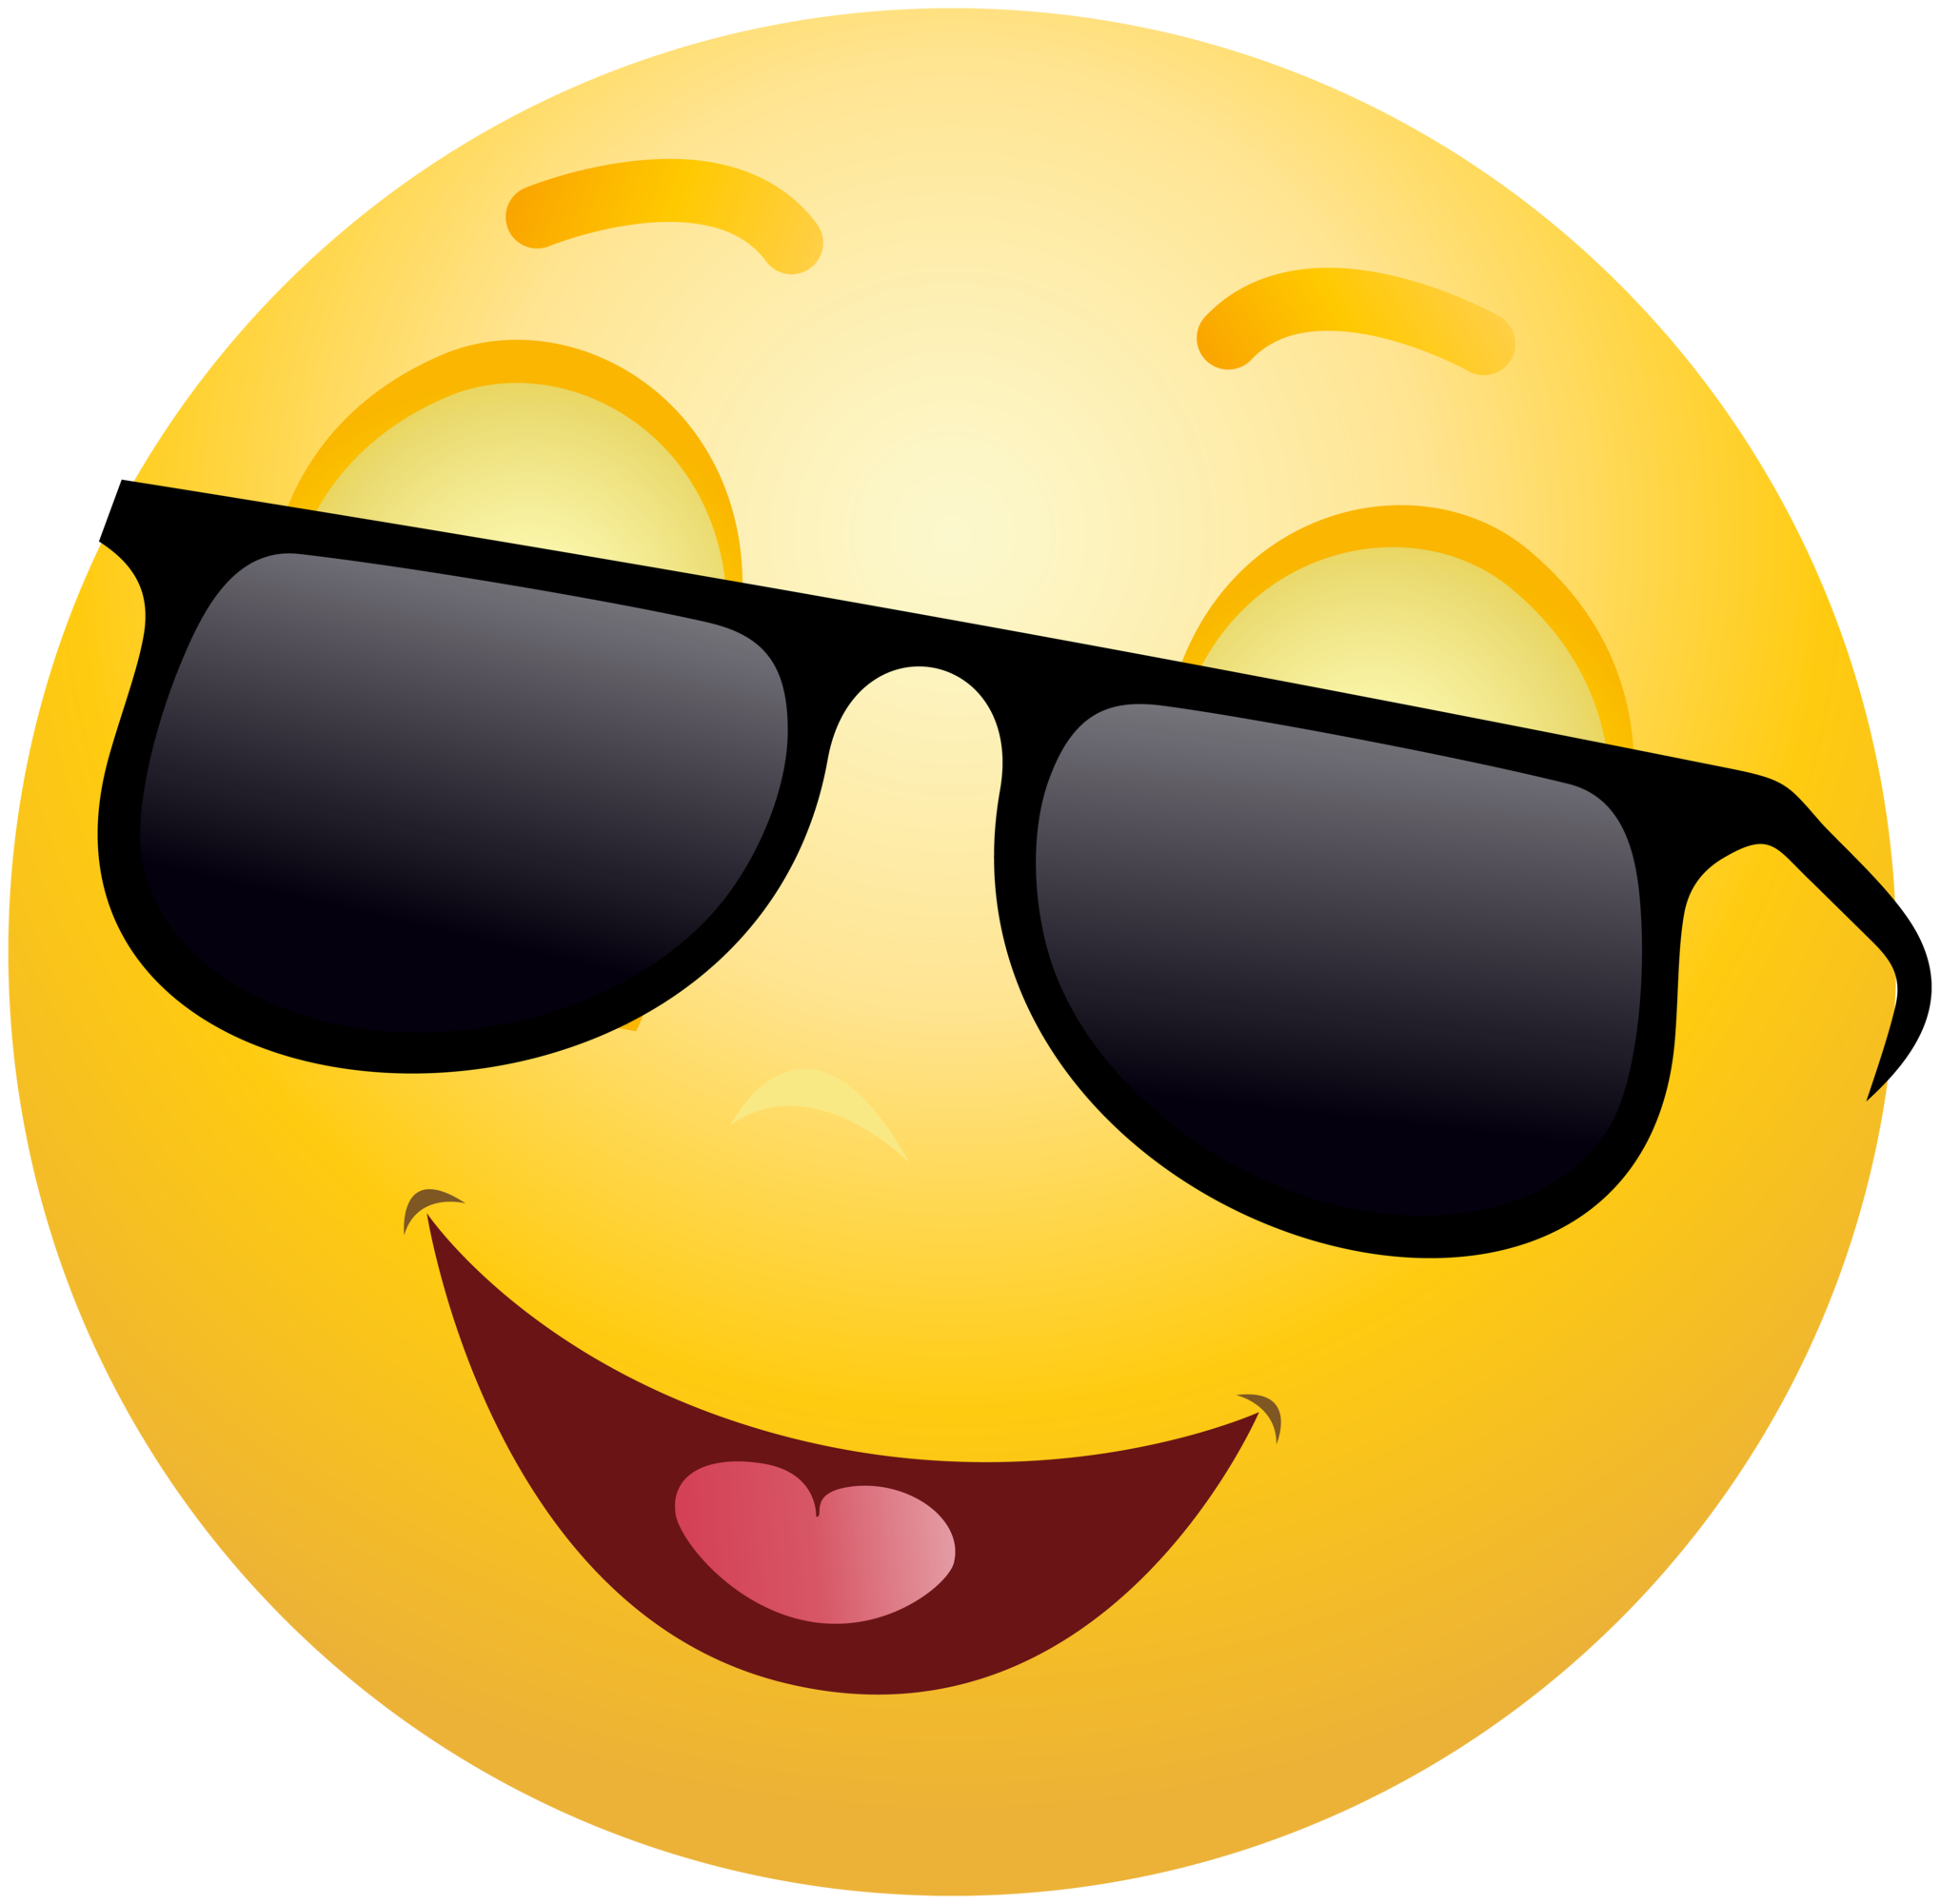 Sonrisa Emoji cara PNG imagen de fondo